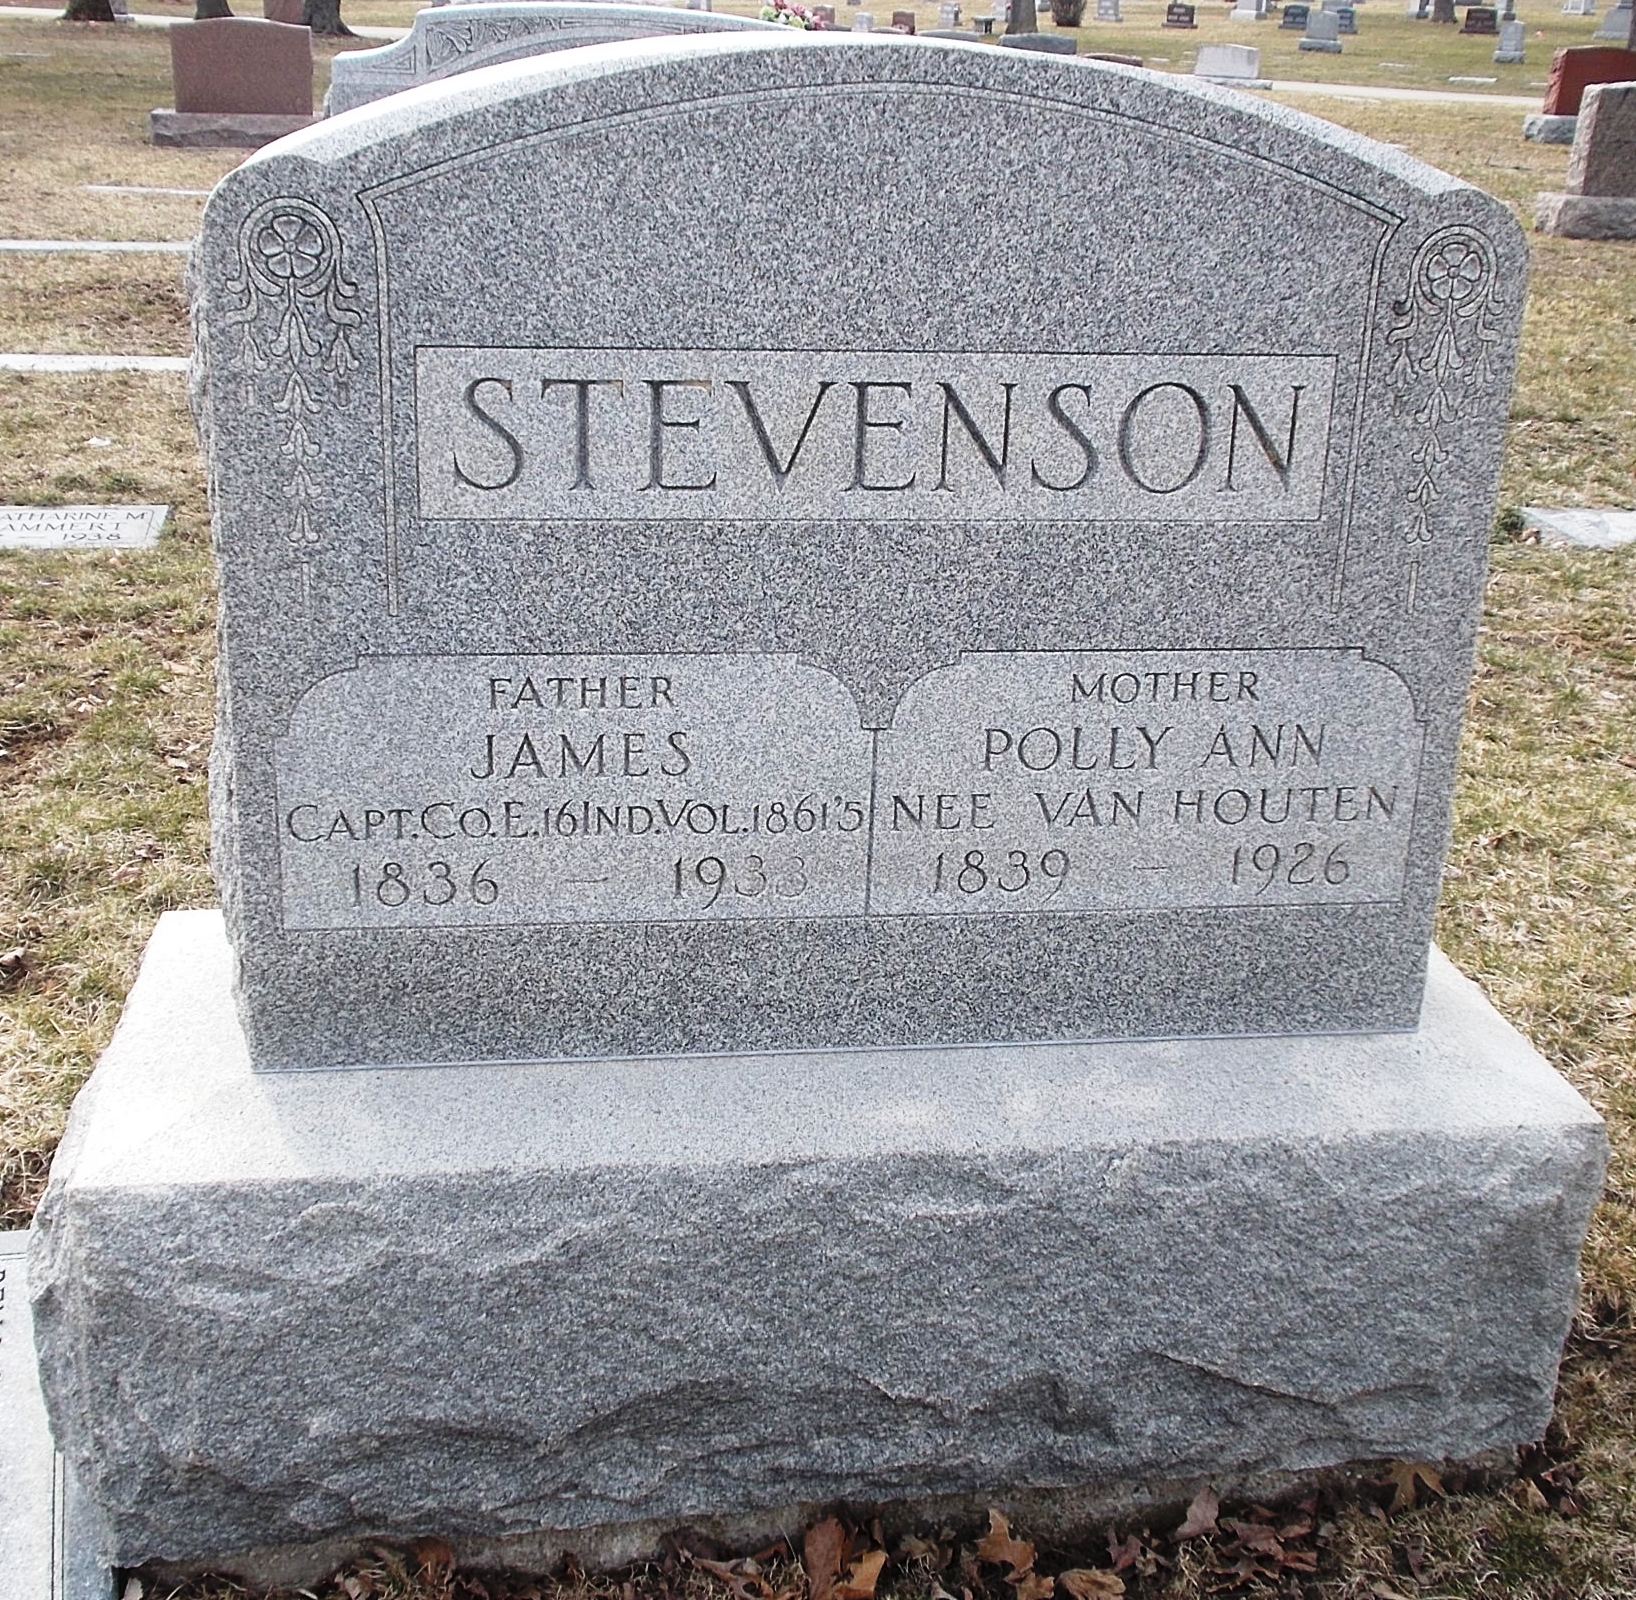 James Stevenson